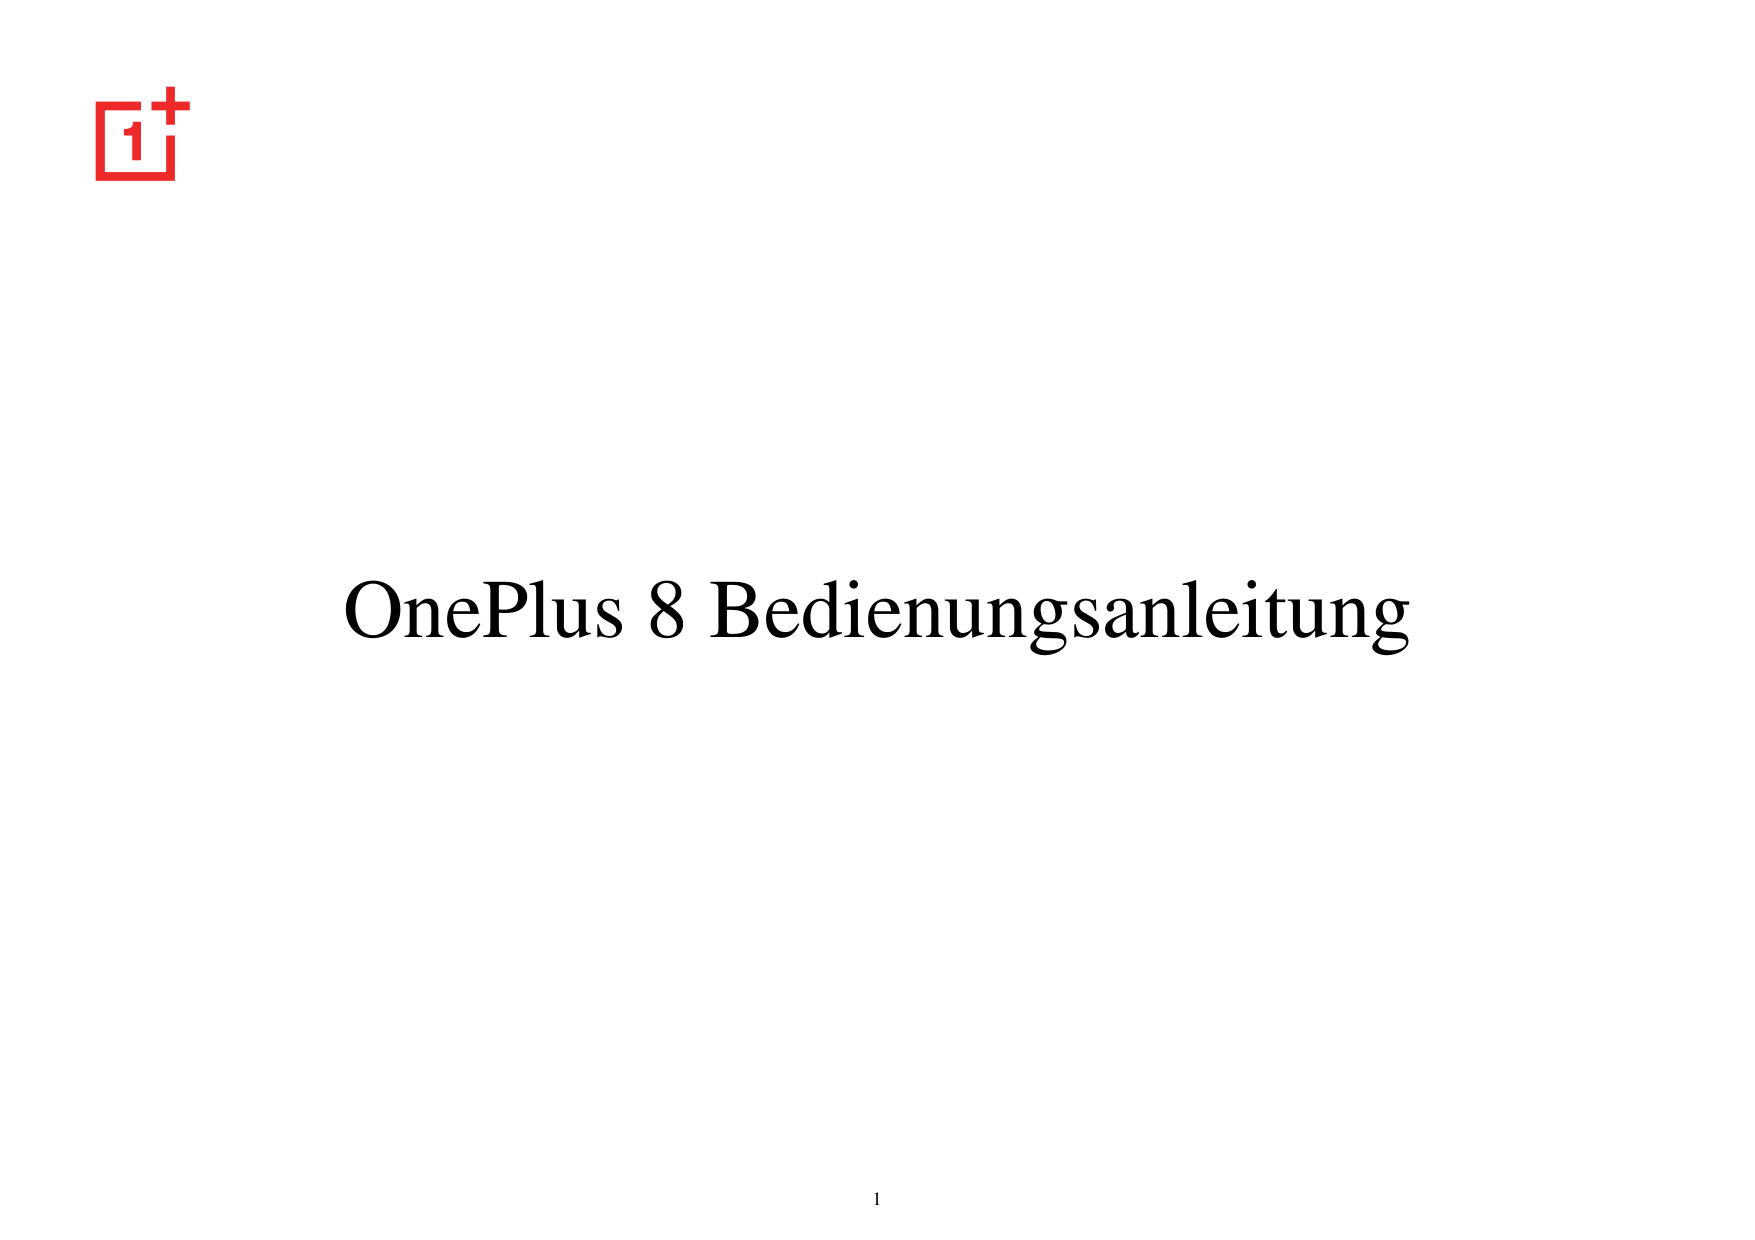 OnePlus 8 Bedienungsanleitung1